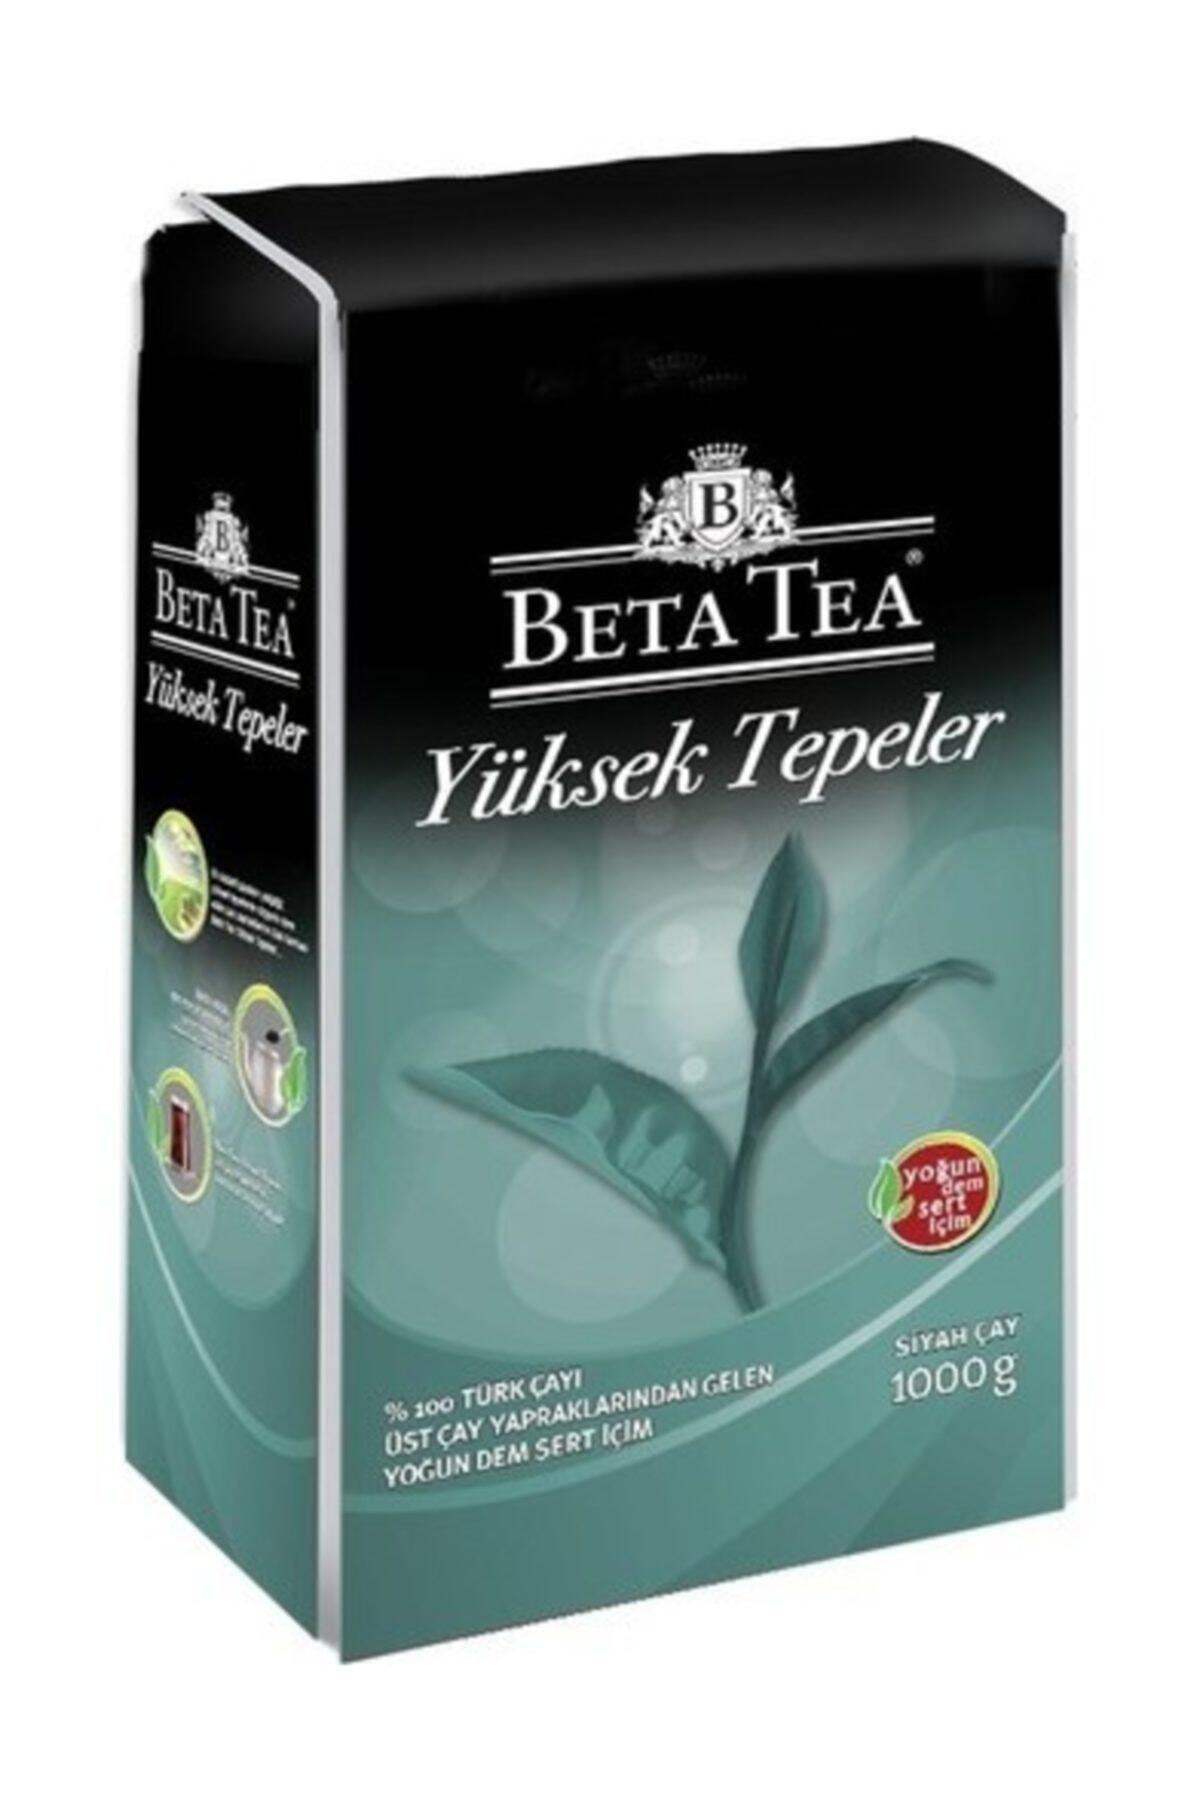 Beta Tea Yüksek Tepeler Dökme Çay 1 kg x 6 Adet